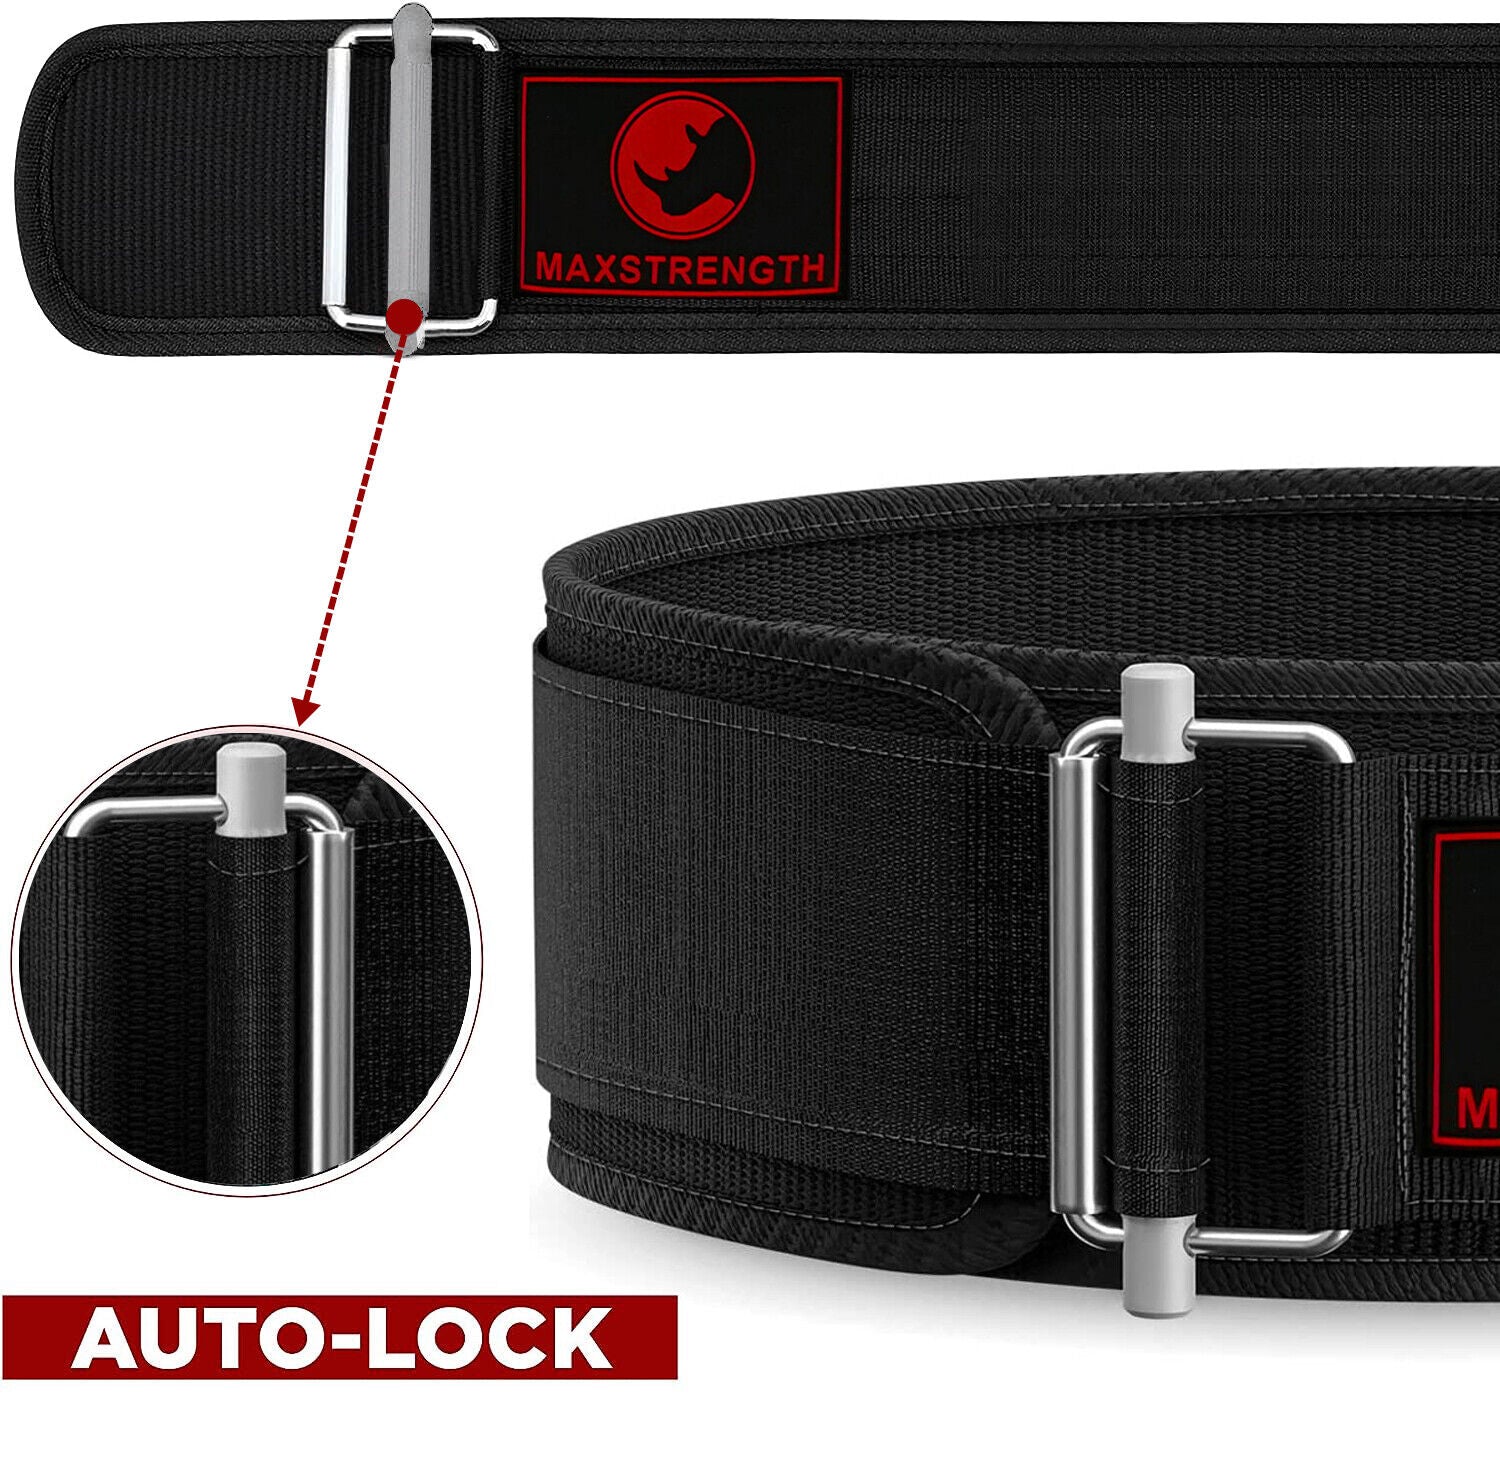 Auto Lock Weightlifting Belt